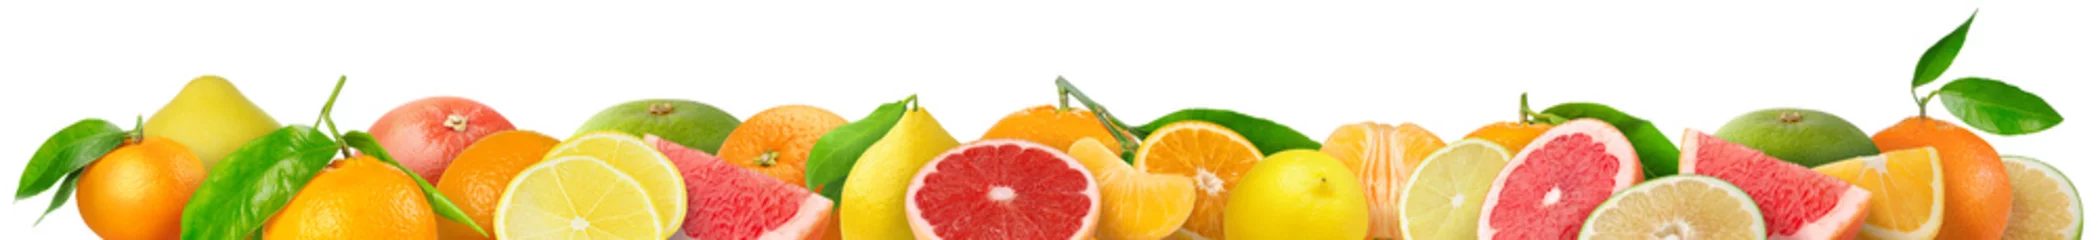 Rolgordijnen Gemengde citrusvruchten grens. Stapel sinaasappel, citroen, mandarijn, grapefruit en andere citrusvruchten in horizontale samenstelling geïsoleerd op witte achtergrond © ChaoticDesignStudio